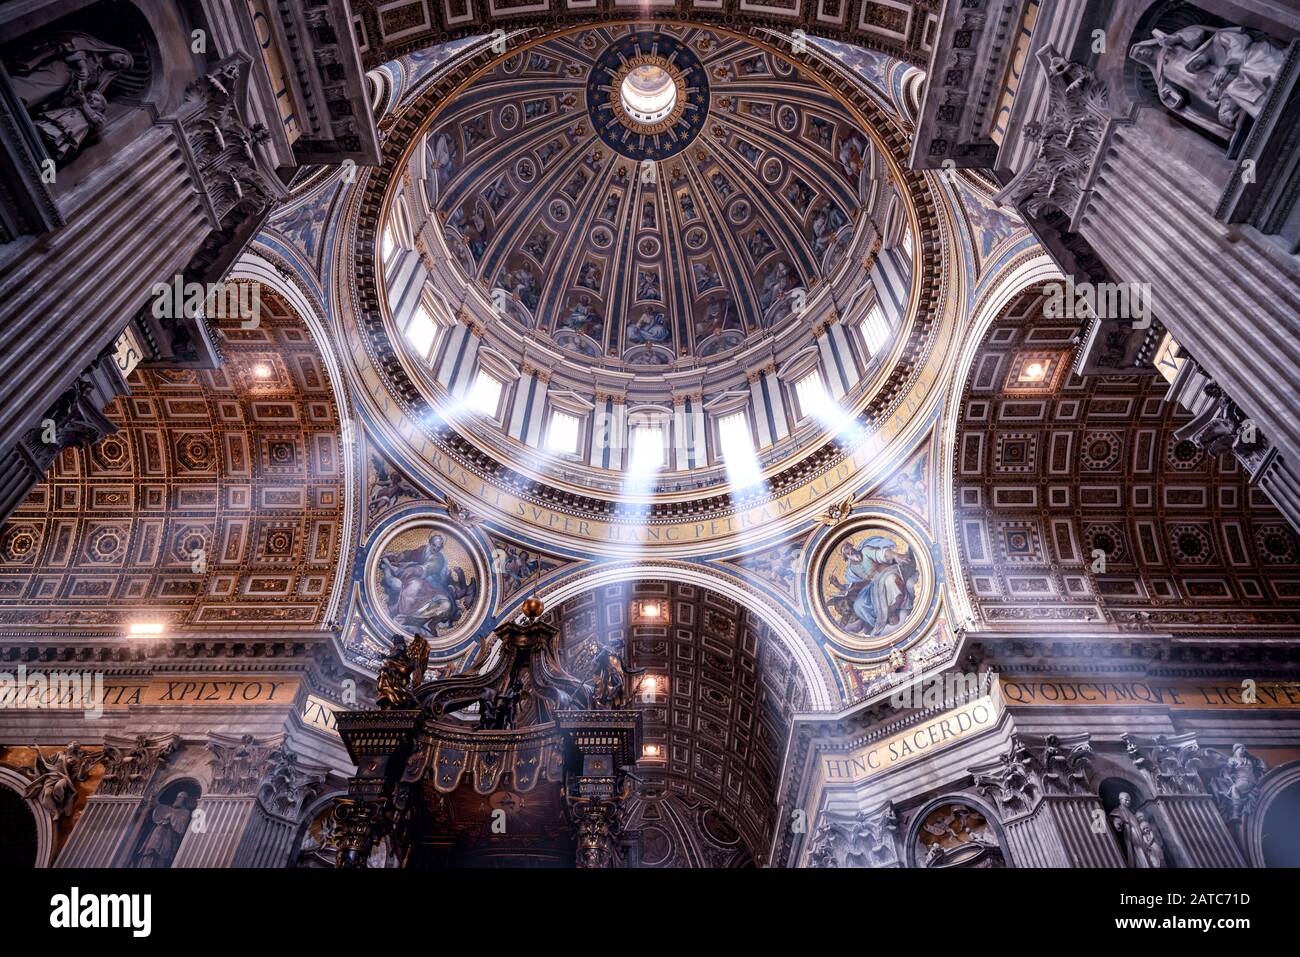 Rome, ITALIE - 12 MAI 2014 : à l'intérieur de la basilique Saint-Pierre. La basilique Saint-Pierre est l'une des principales attractions touristiques de Rome. Banque D'Images